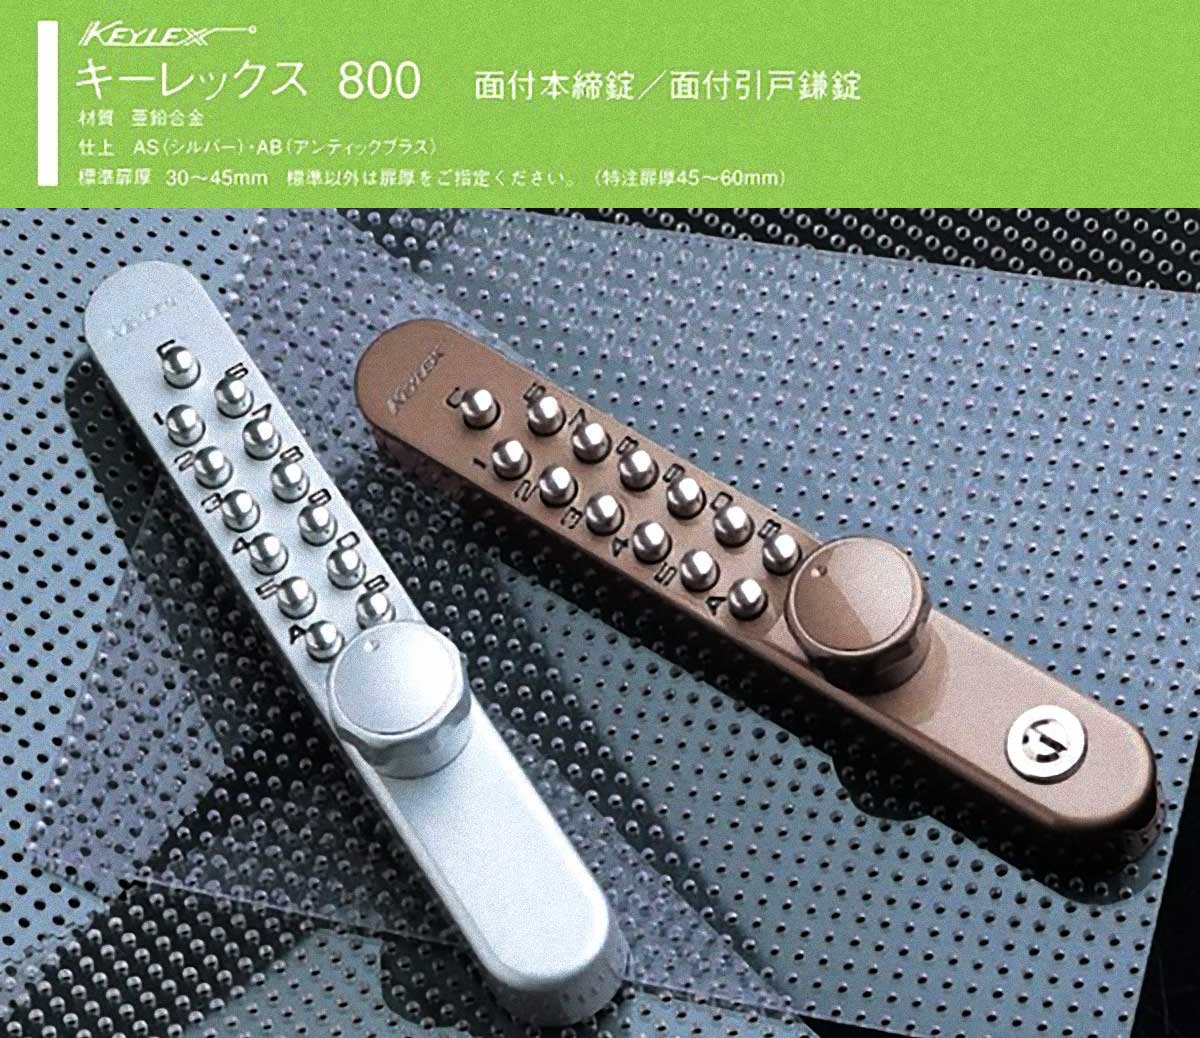 NAGASAWA キーレックス800 面付引戸鎌錠 ロックターンタイプ シルバー 22805 - 1